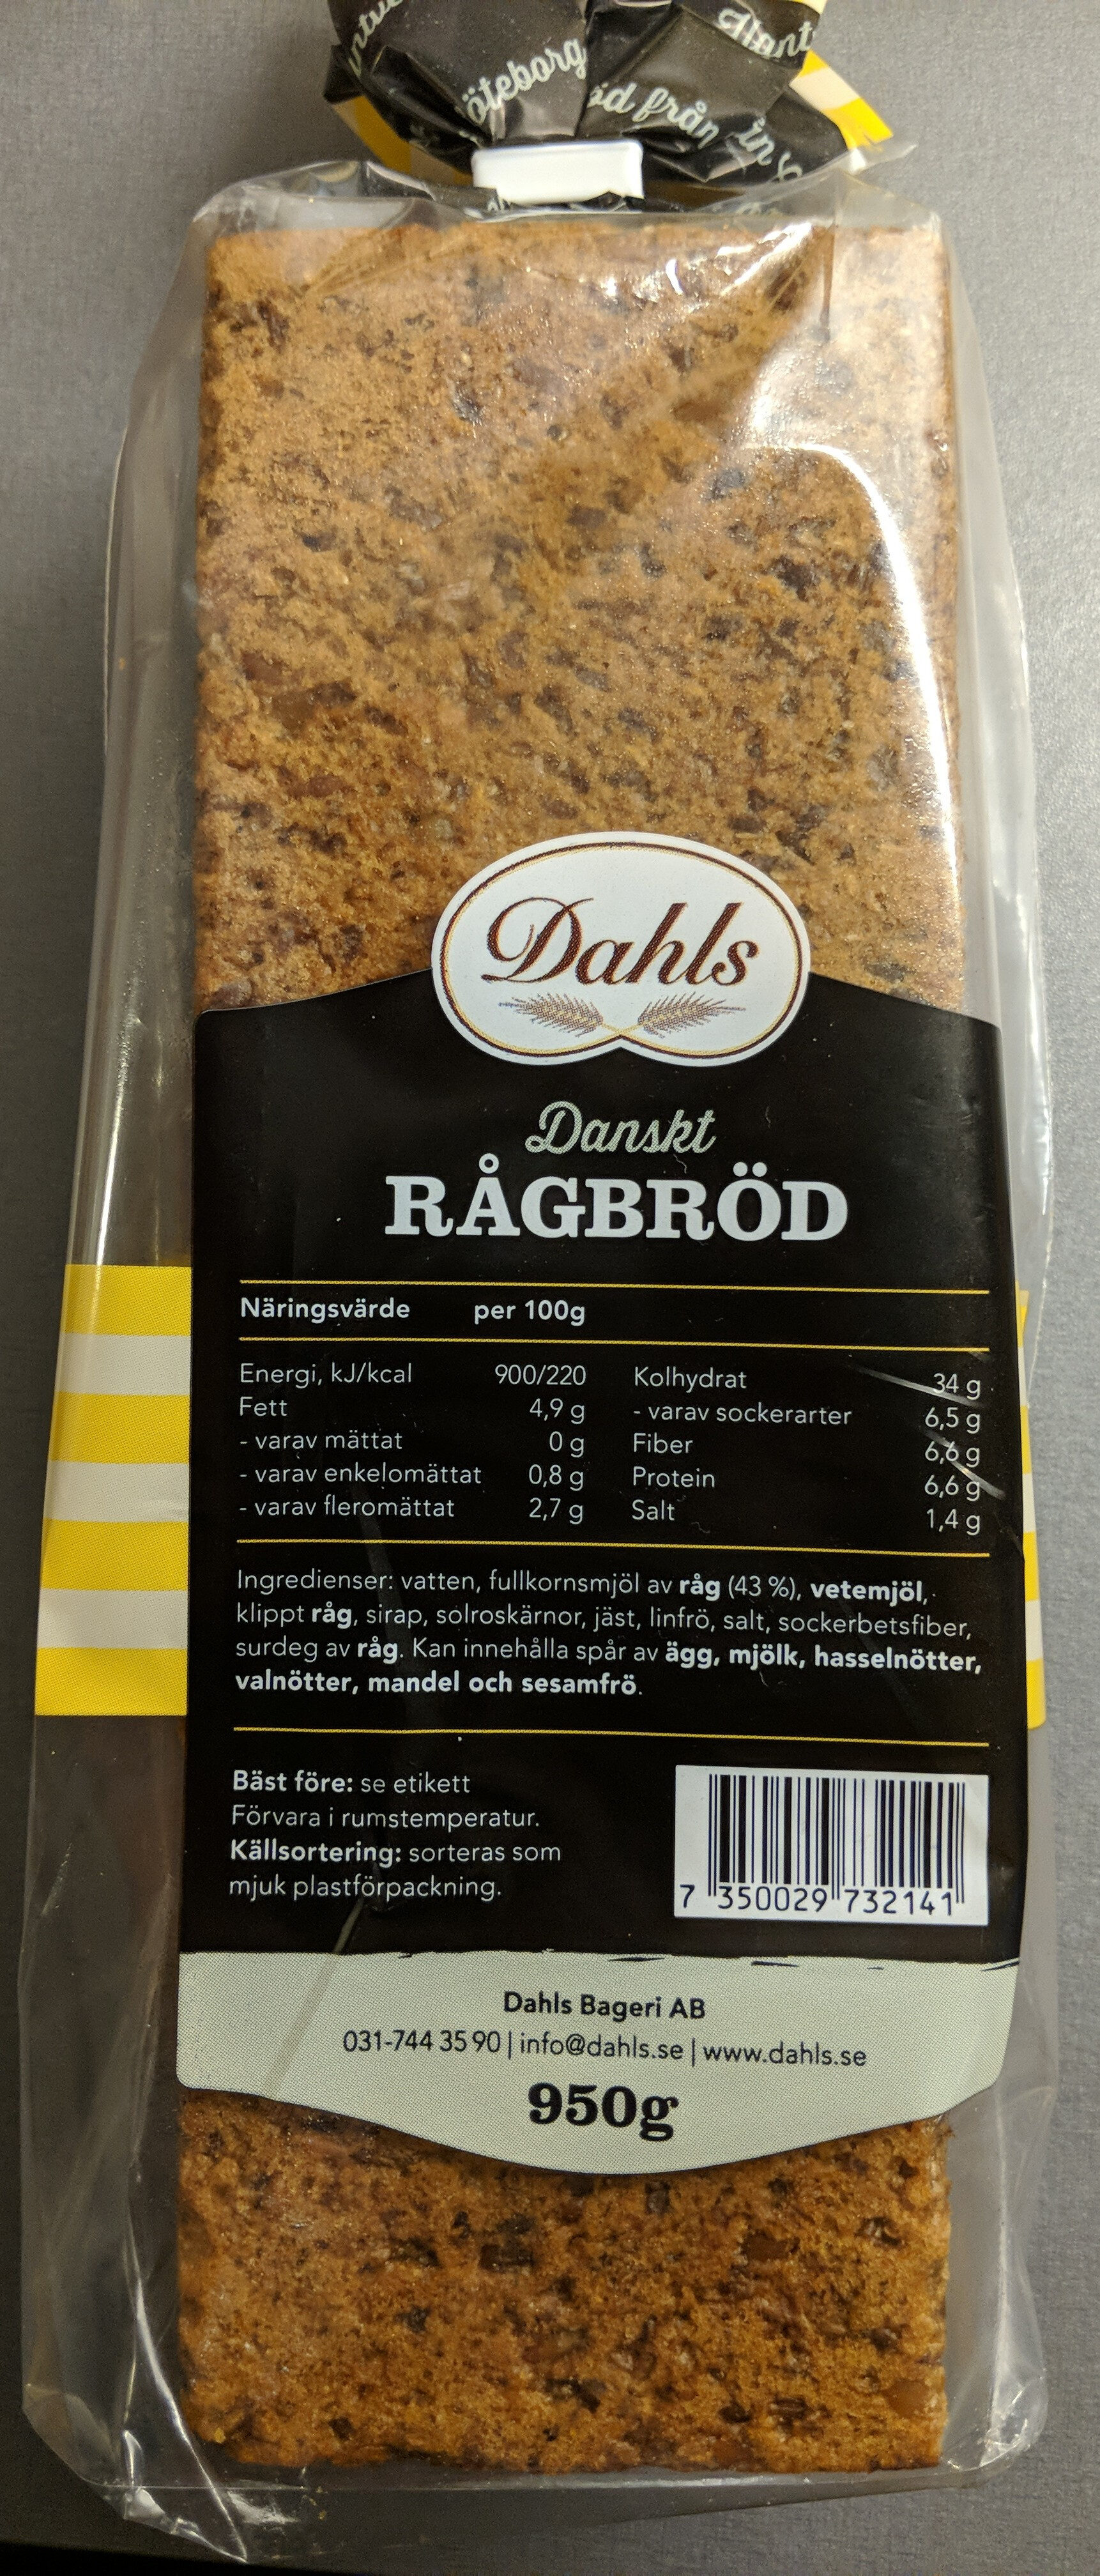 Danskt Rågbröd - Product - sv